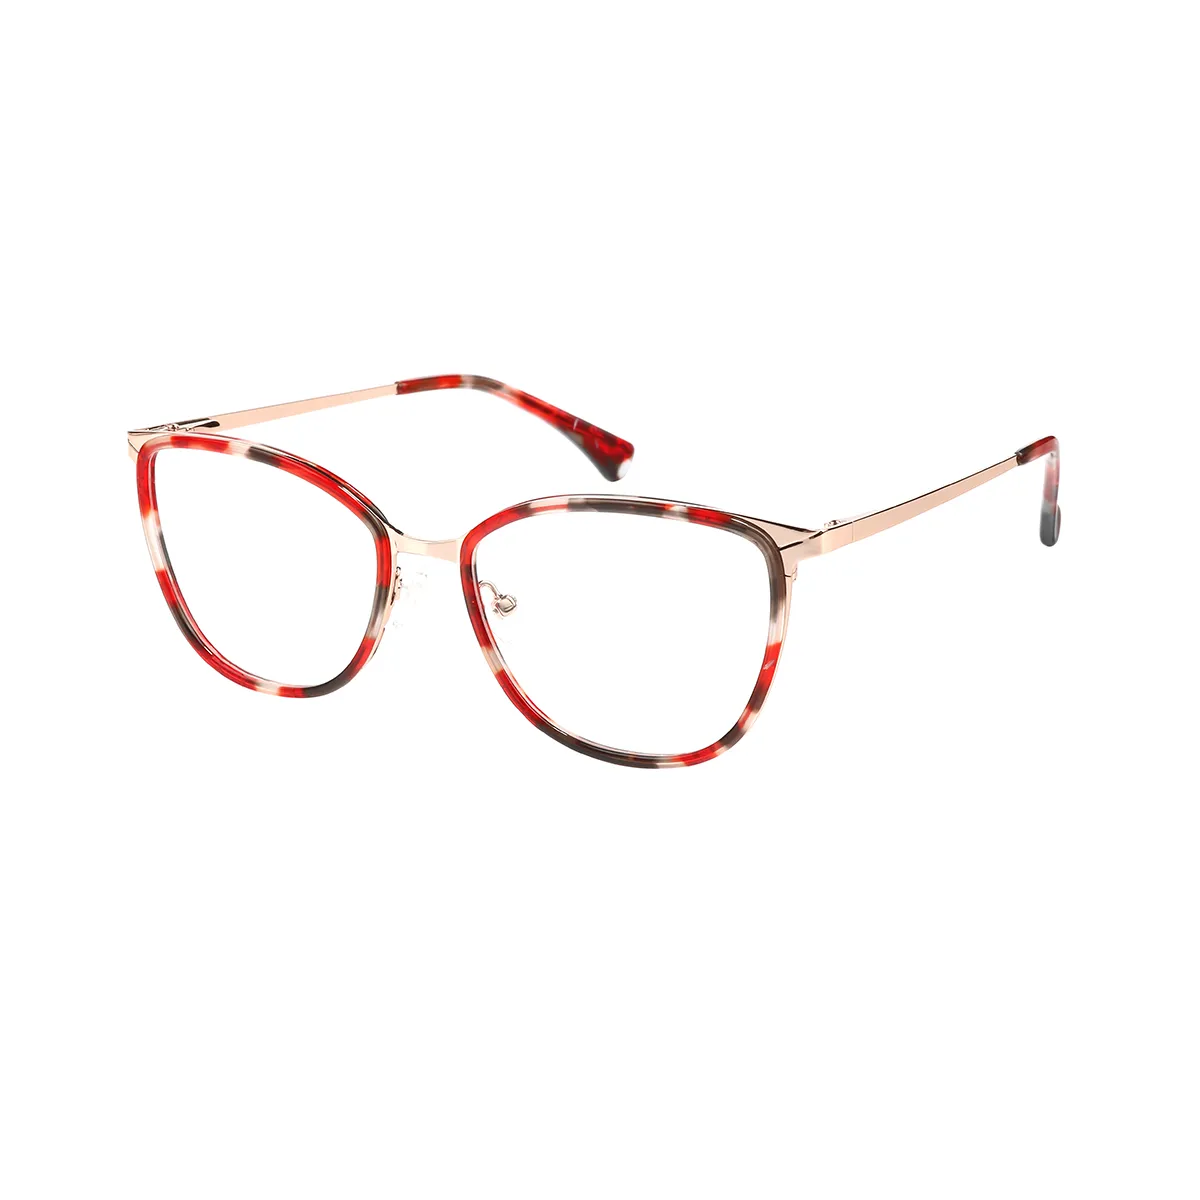 April - Oval Red-Tortoiseshell Glasses for Women